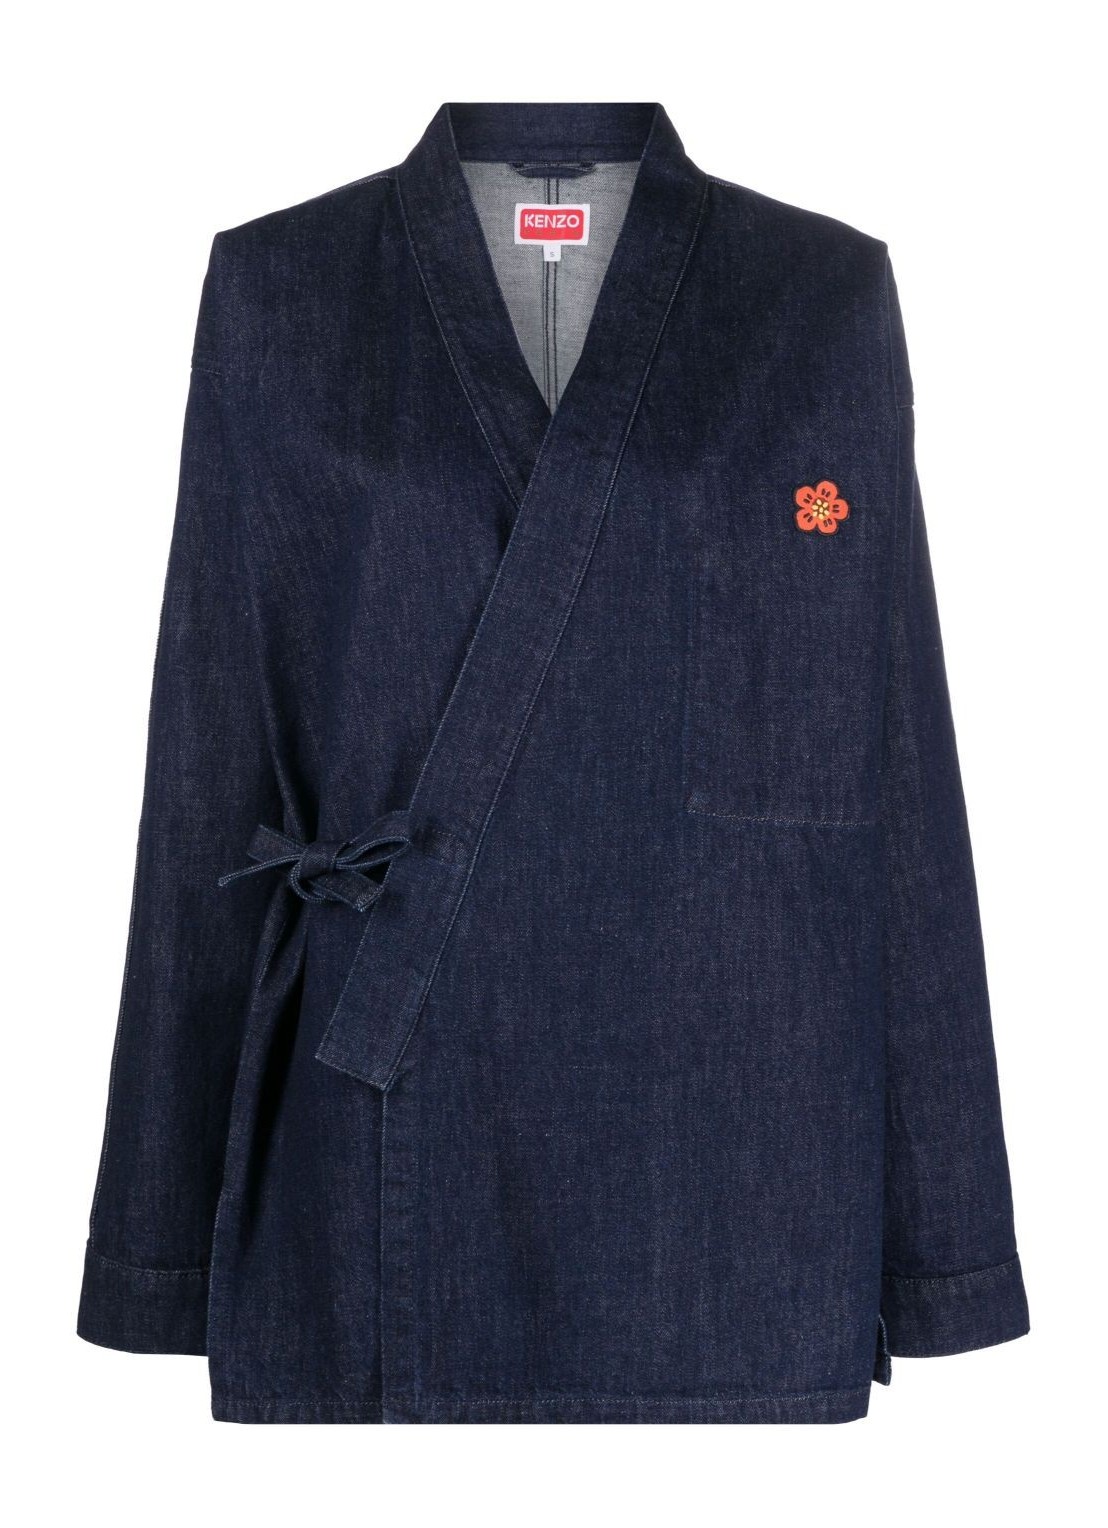 Outerwear kenzo outerwear man boke crest rinse denim kimono fd65dm1406b1 dm talla M
 